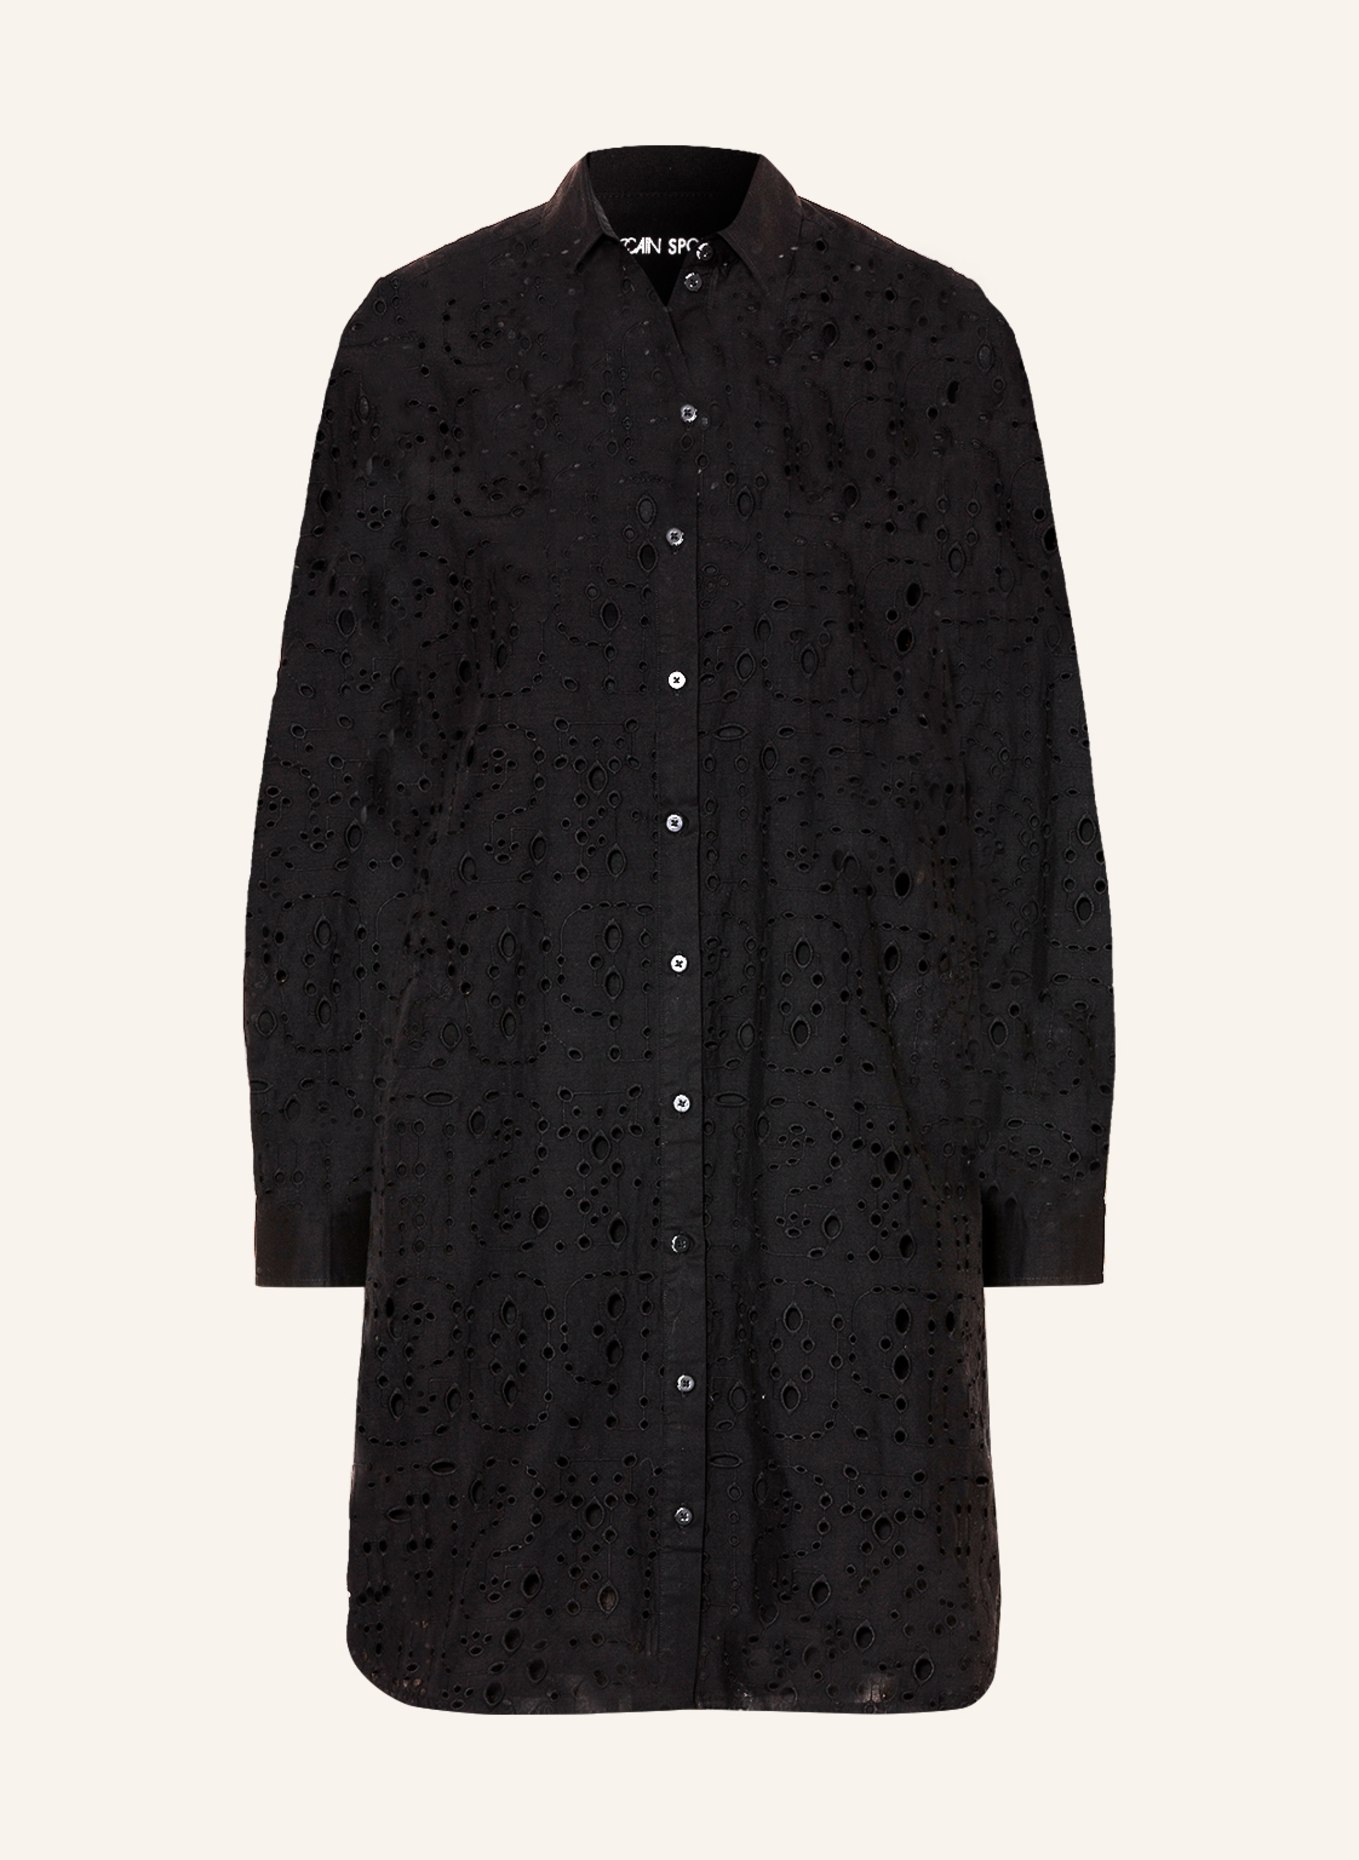 MARC CAIN Shirt dress, Color: 900 BLACK (Image 1)